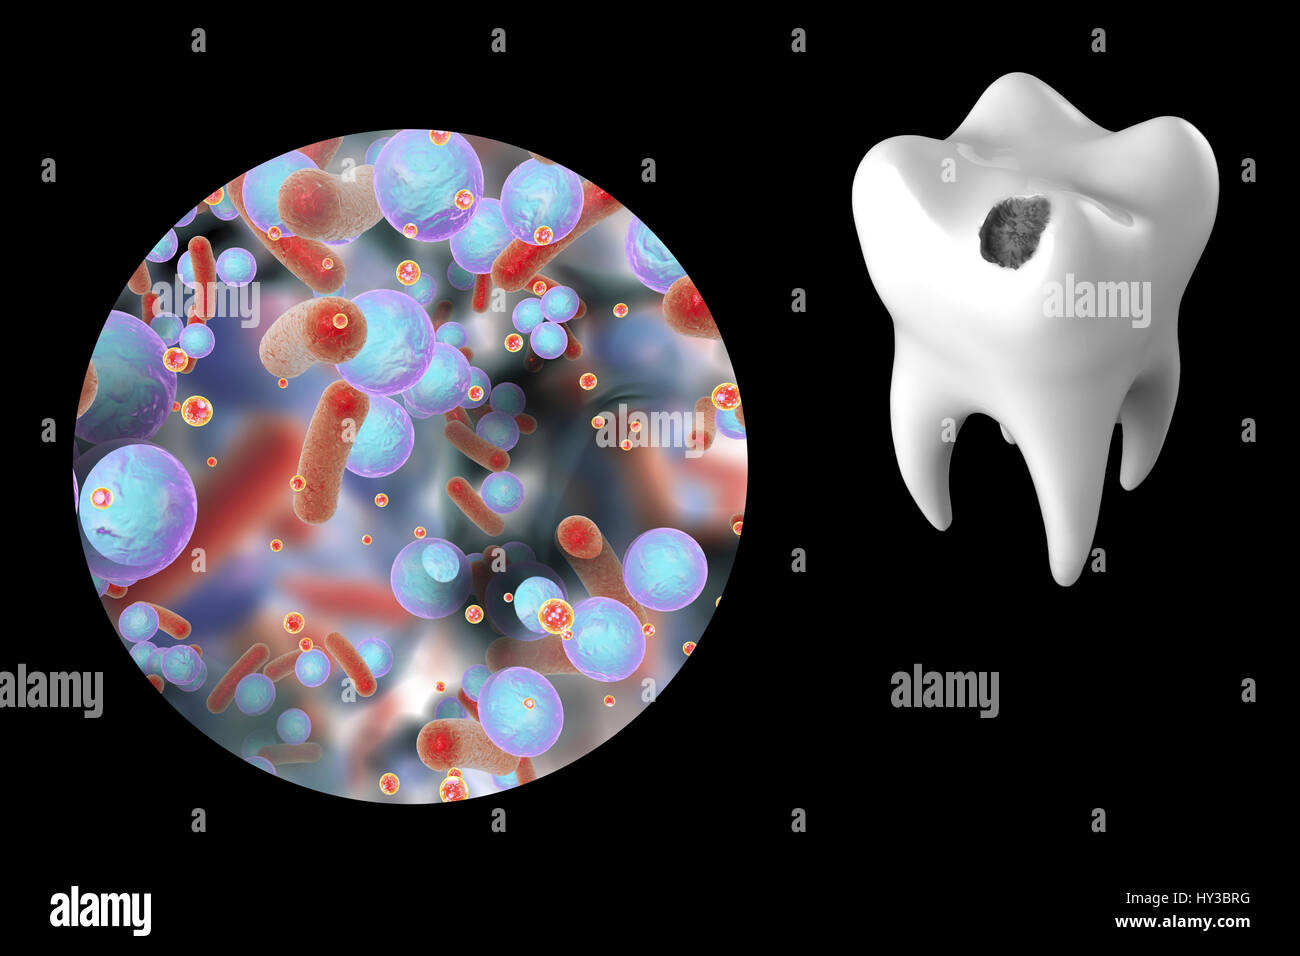 La carie dentaire. Illustration d'ordinateur d'une dent avec une cavité et une vue rapprochée de la bactérie à l'origine de la formation de caries. Banque D'Images